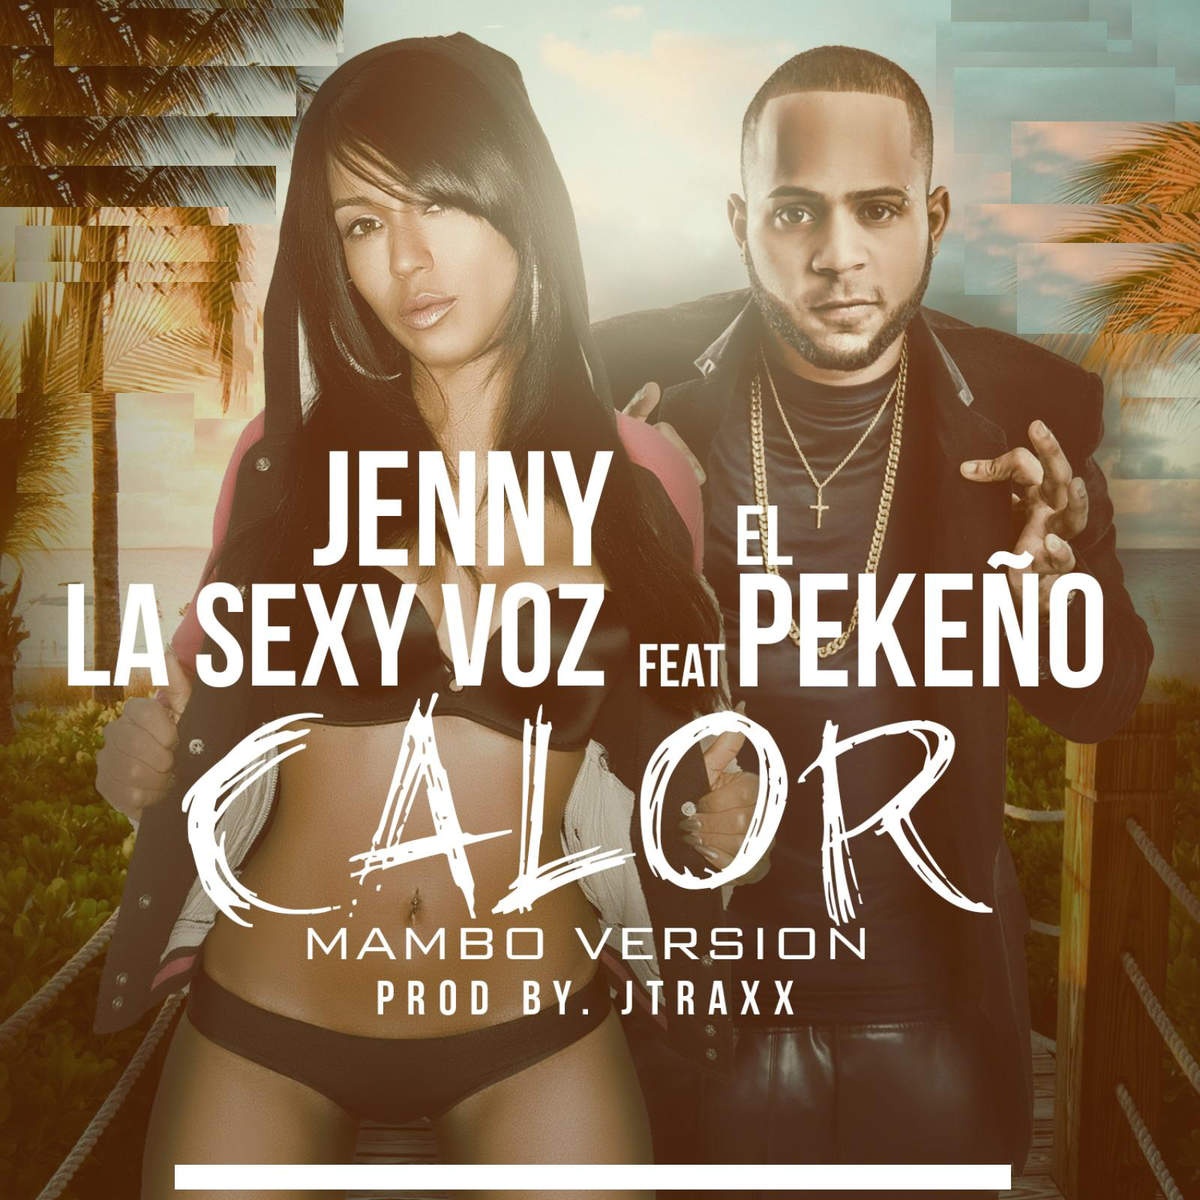 Calor (Mambo Remix) [feat. El Pequeno]